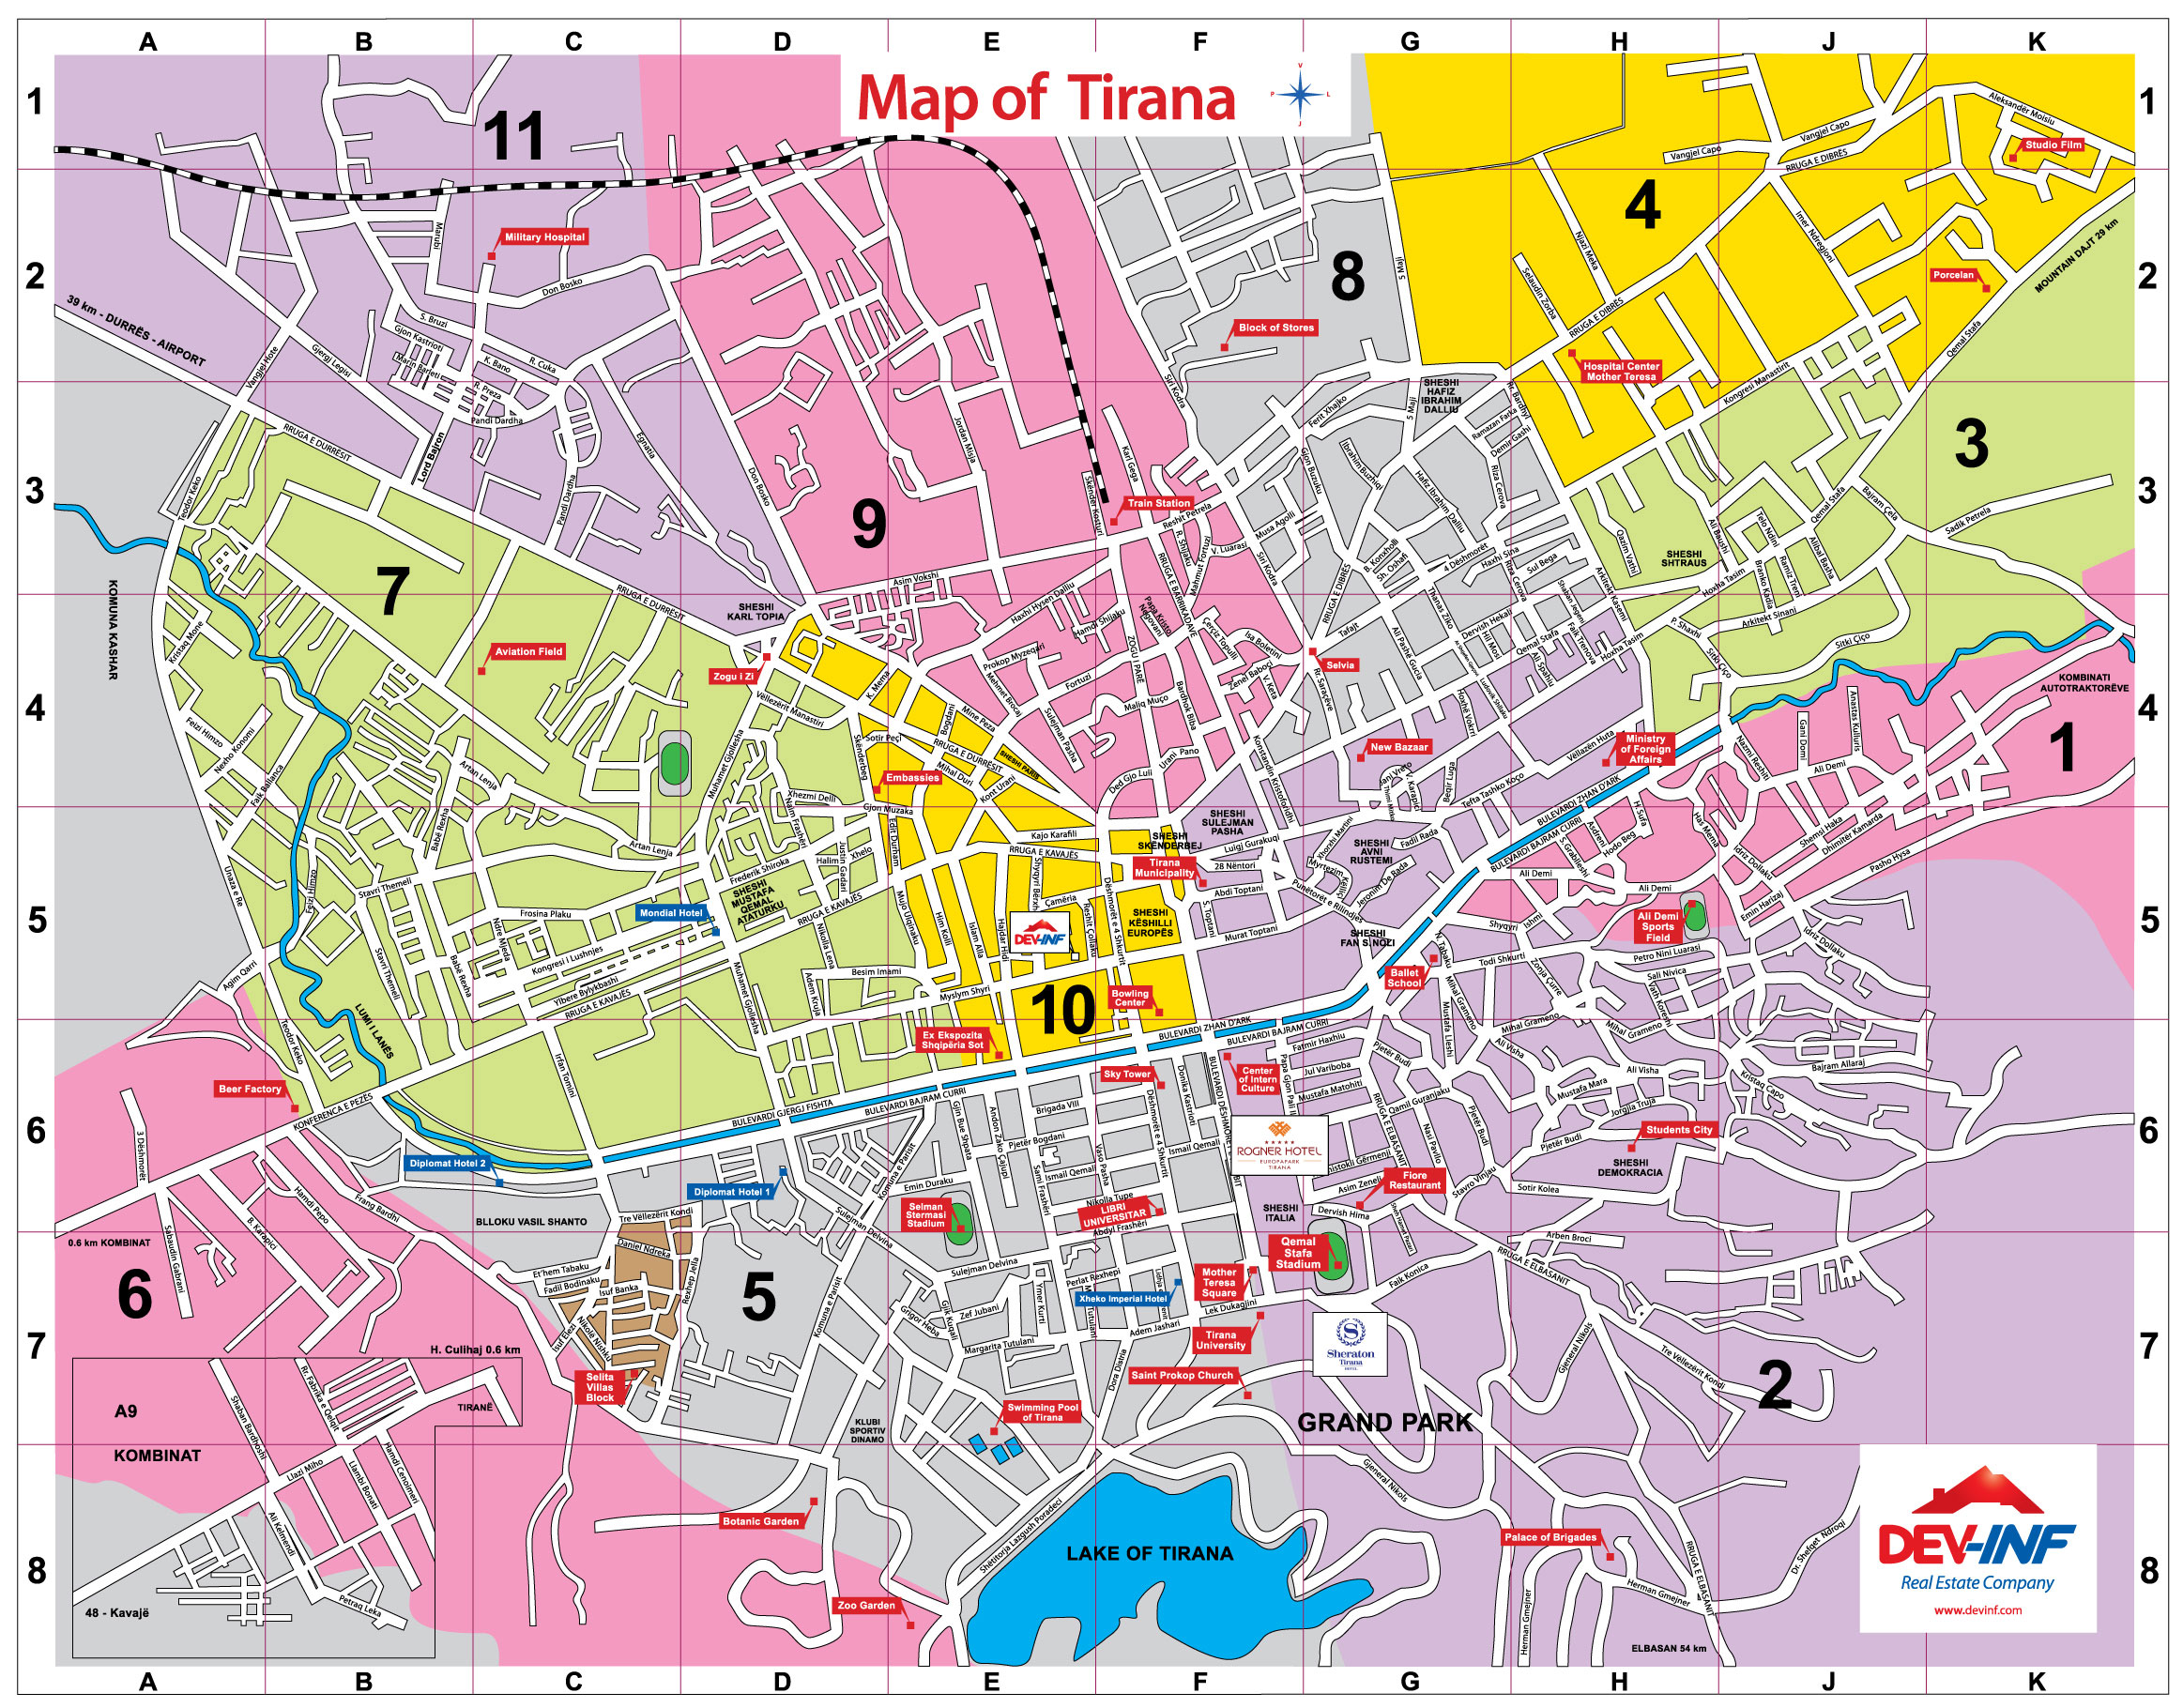 tirana tourism map